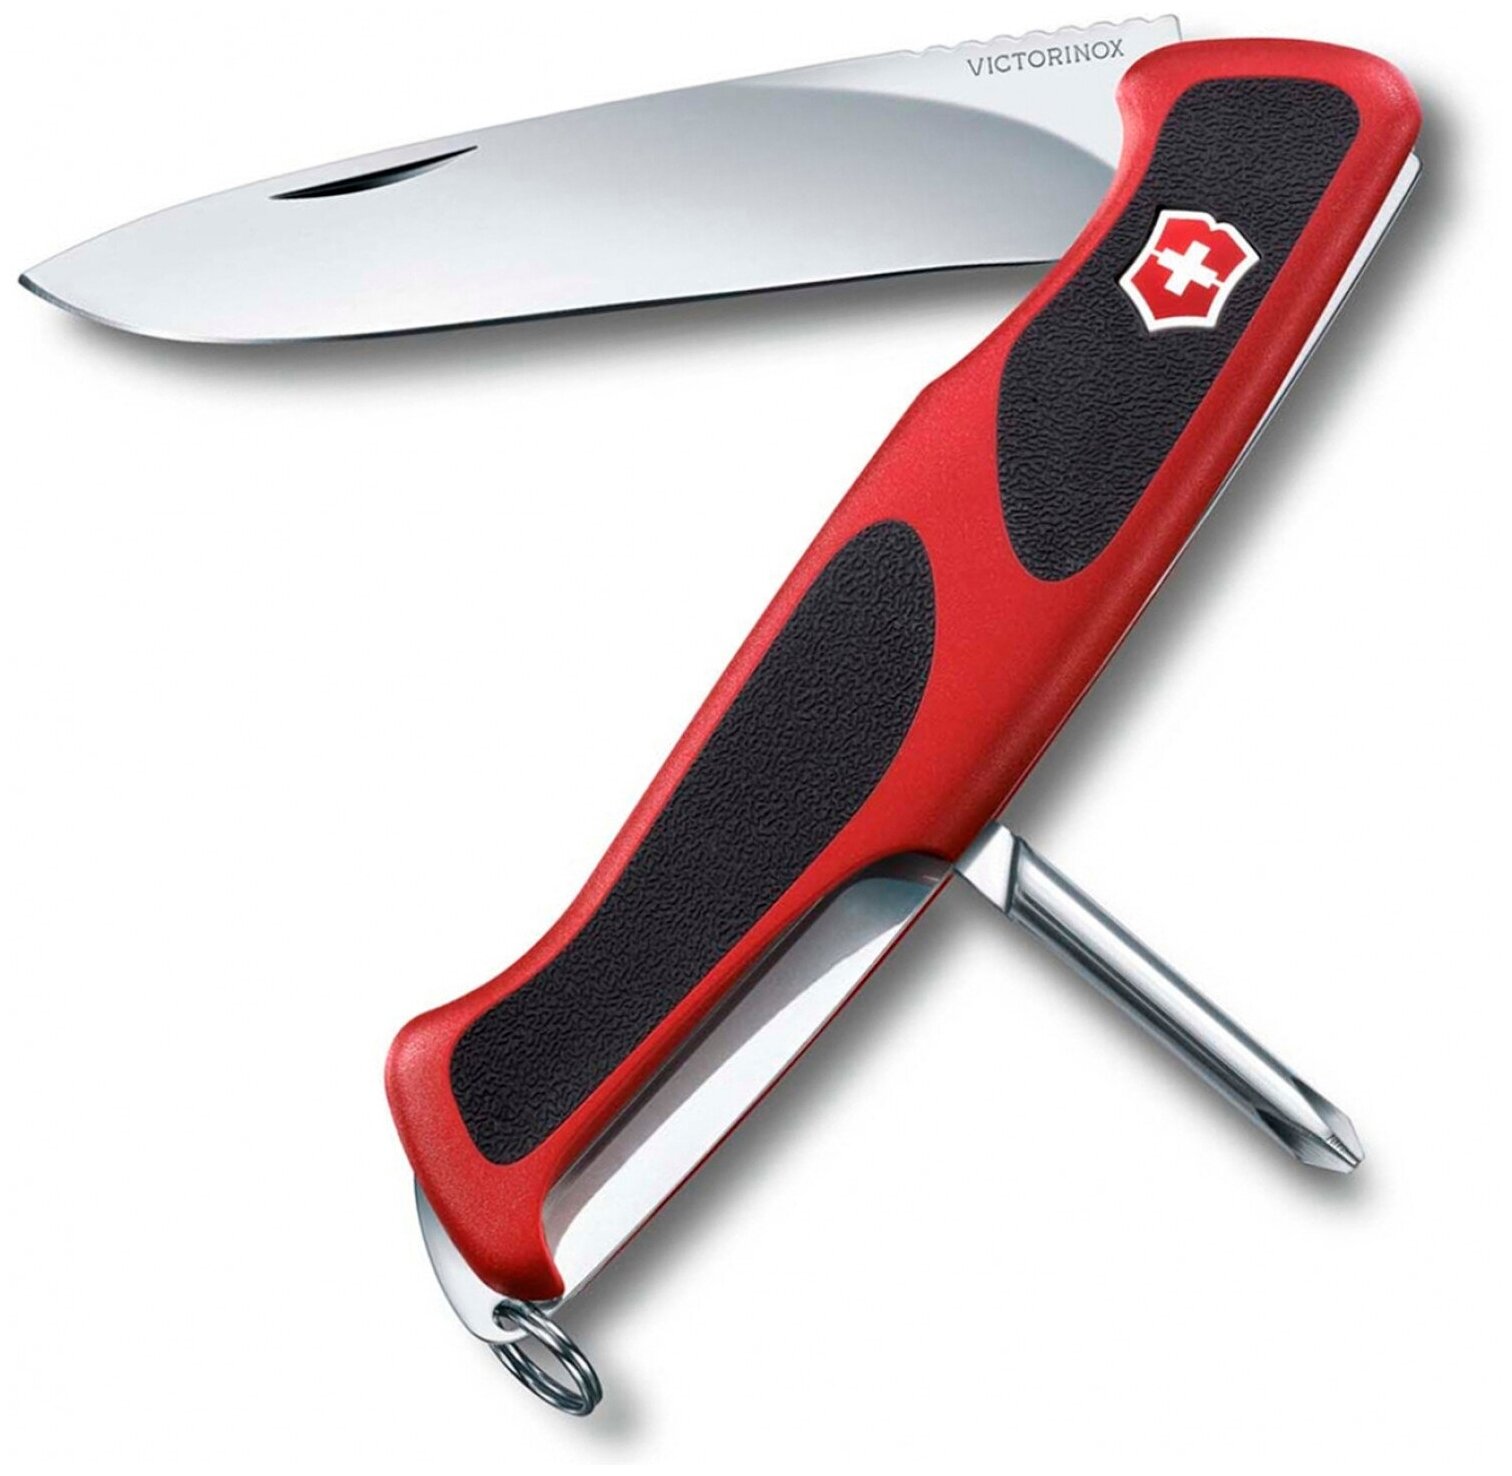 Нож перочинный Victorinox RangerGrip 53 (0.9623.C) 130мм 5функций красный/черный карт.коробка - фото №1